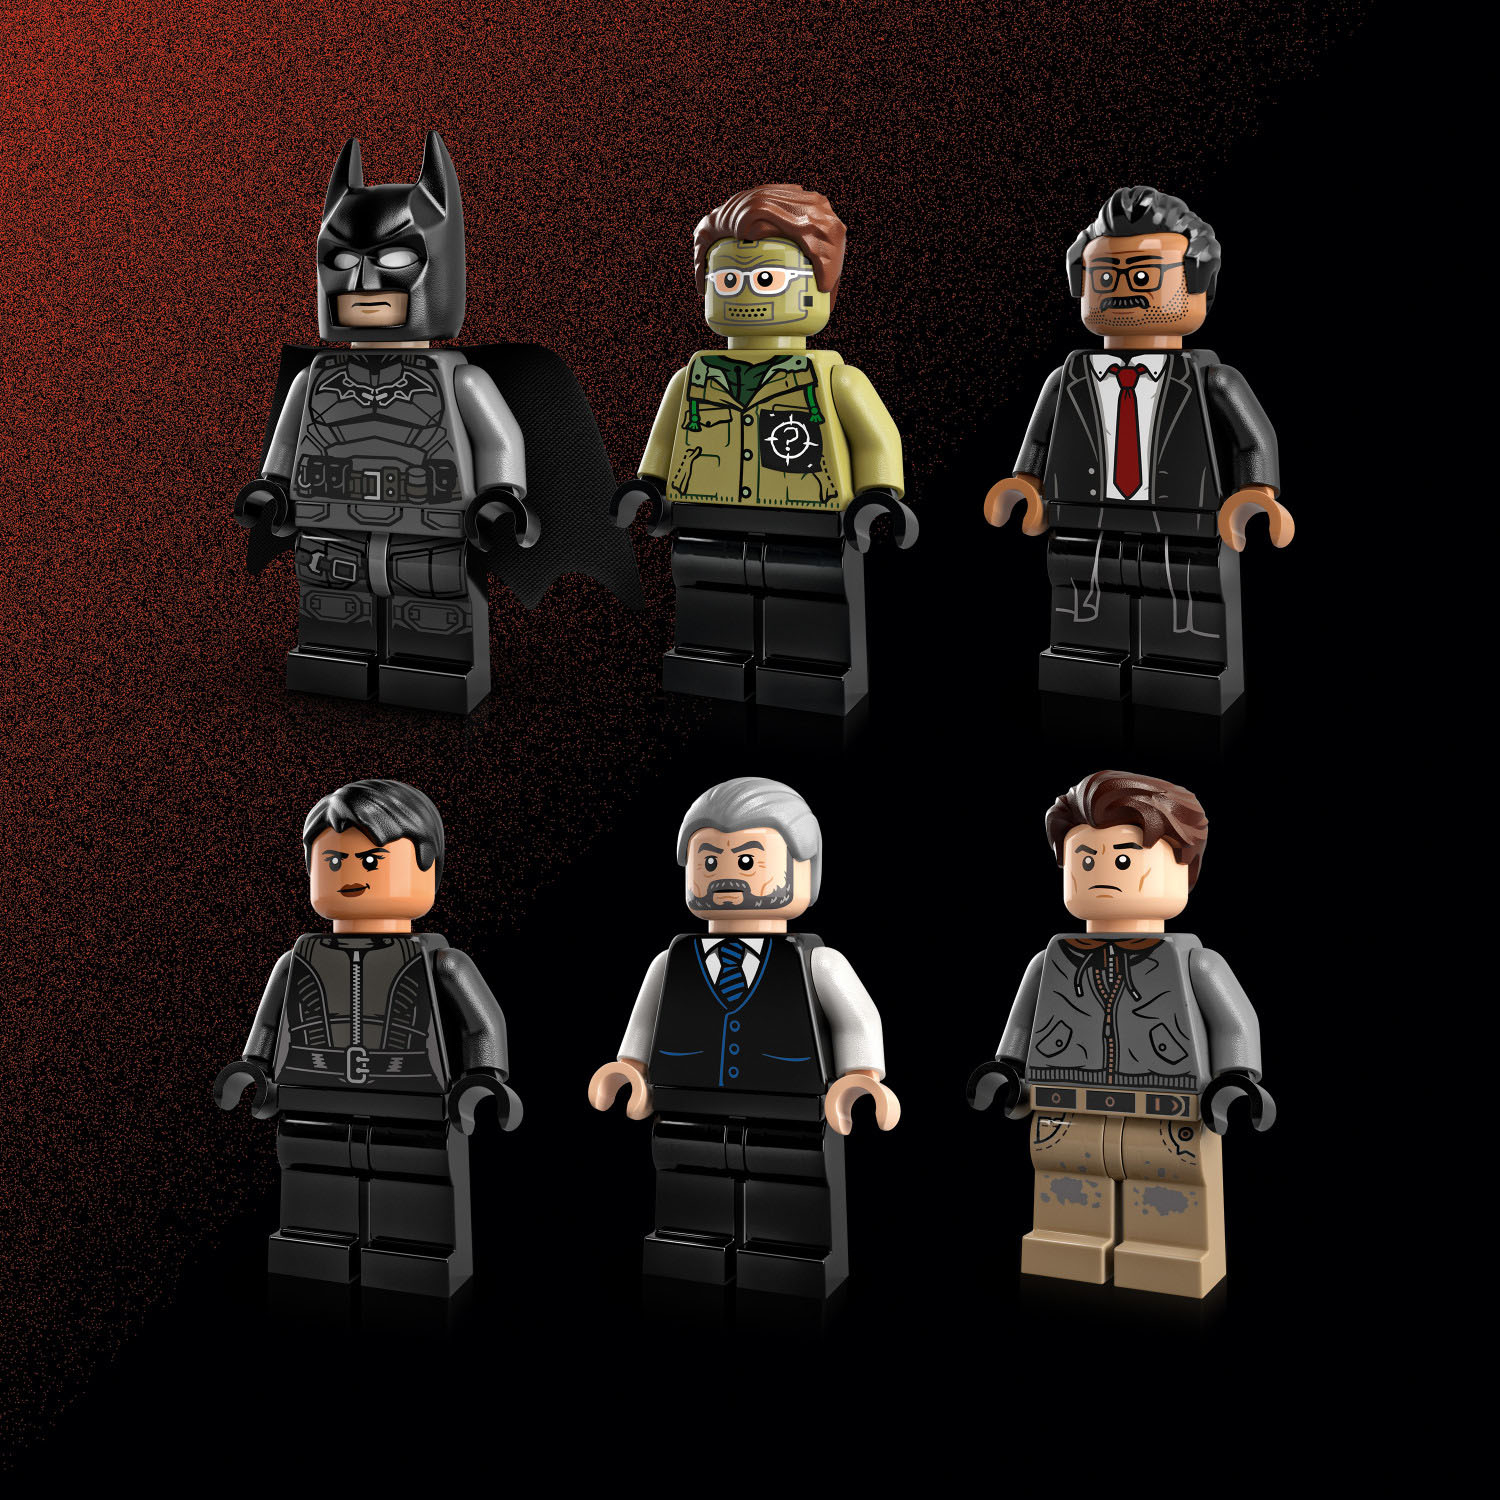 Best Buy: LEGO Super Heroes Batman vs. The Joker: Batmobile Chase 76180  6332635